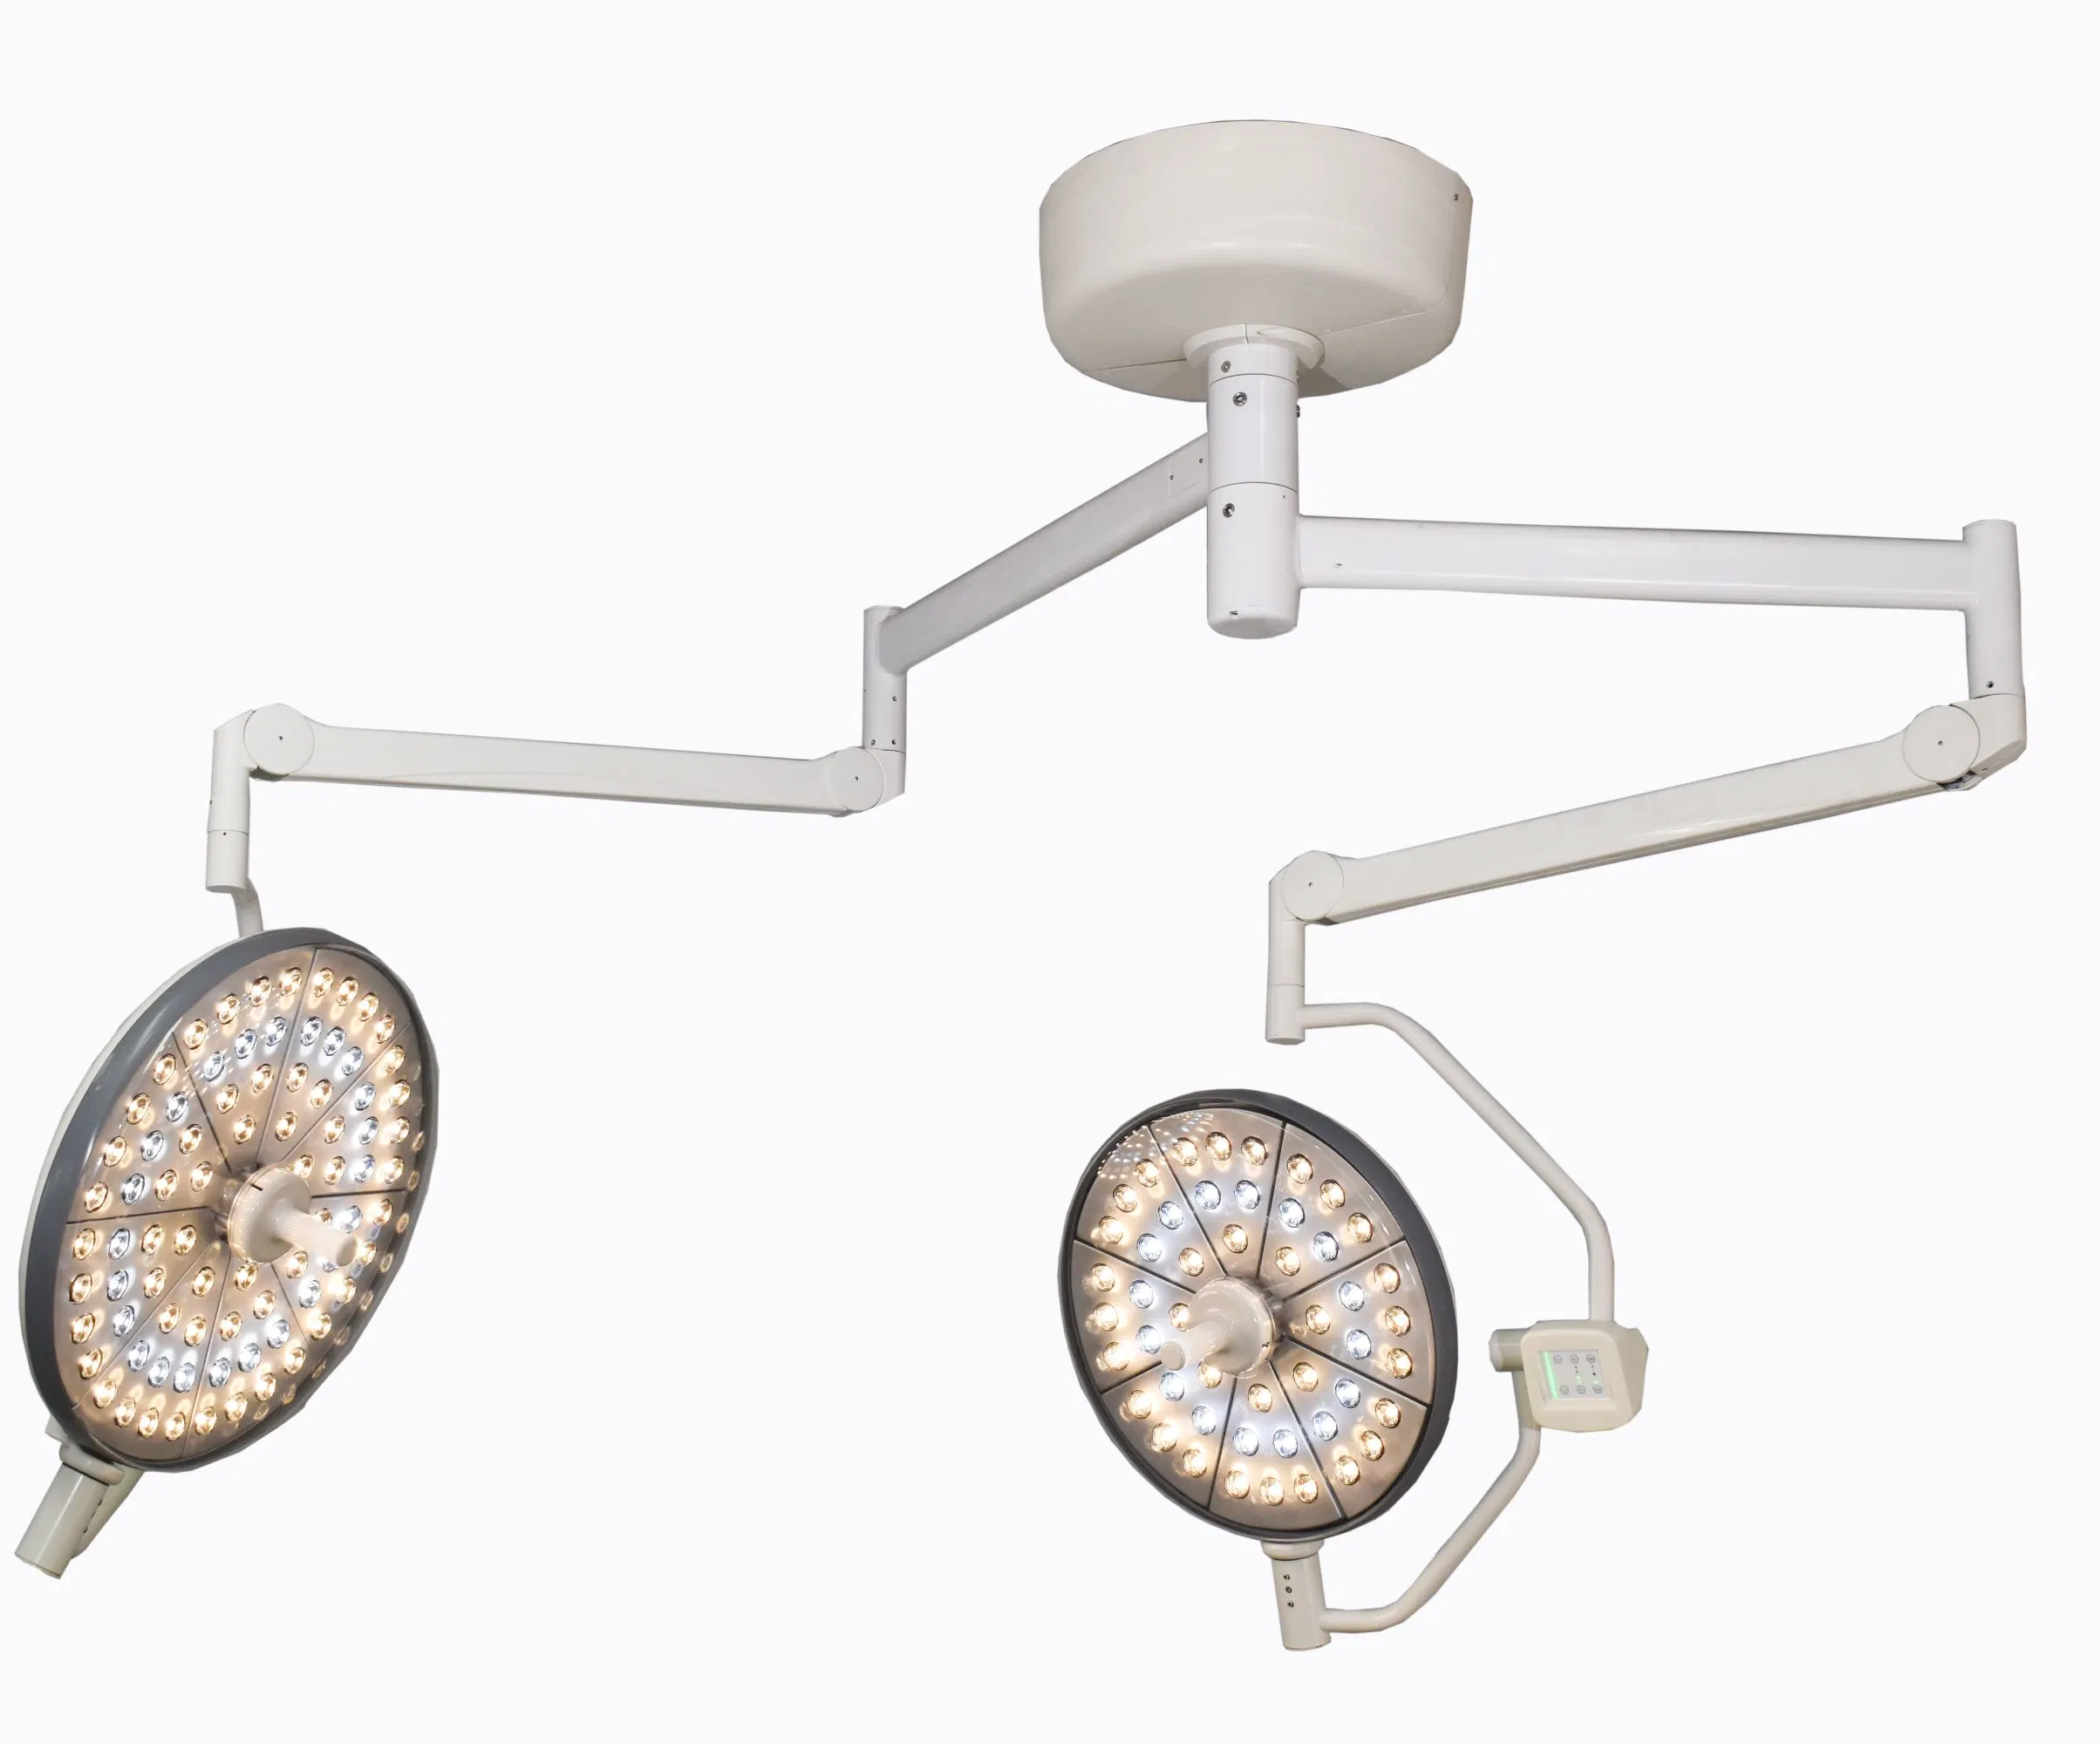 المعدات الطبية مستشفى استخدام مزدوجة الرؤوس LED عملية الإضاءة السقف مصباح التشغيل الضوء الجراحي